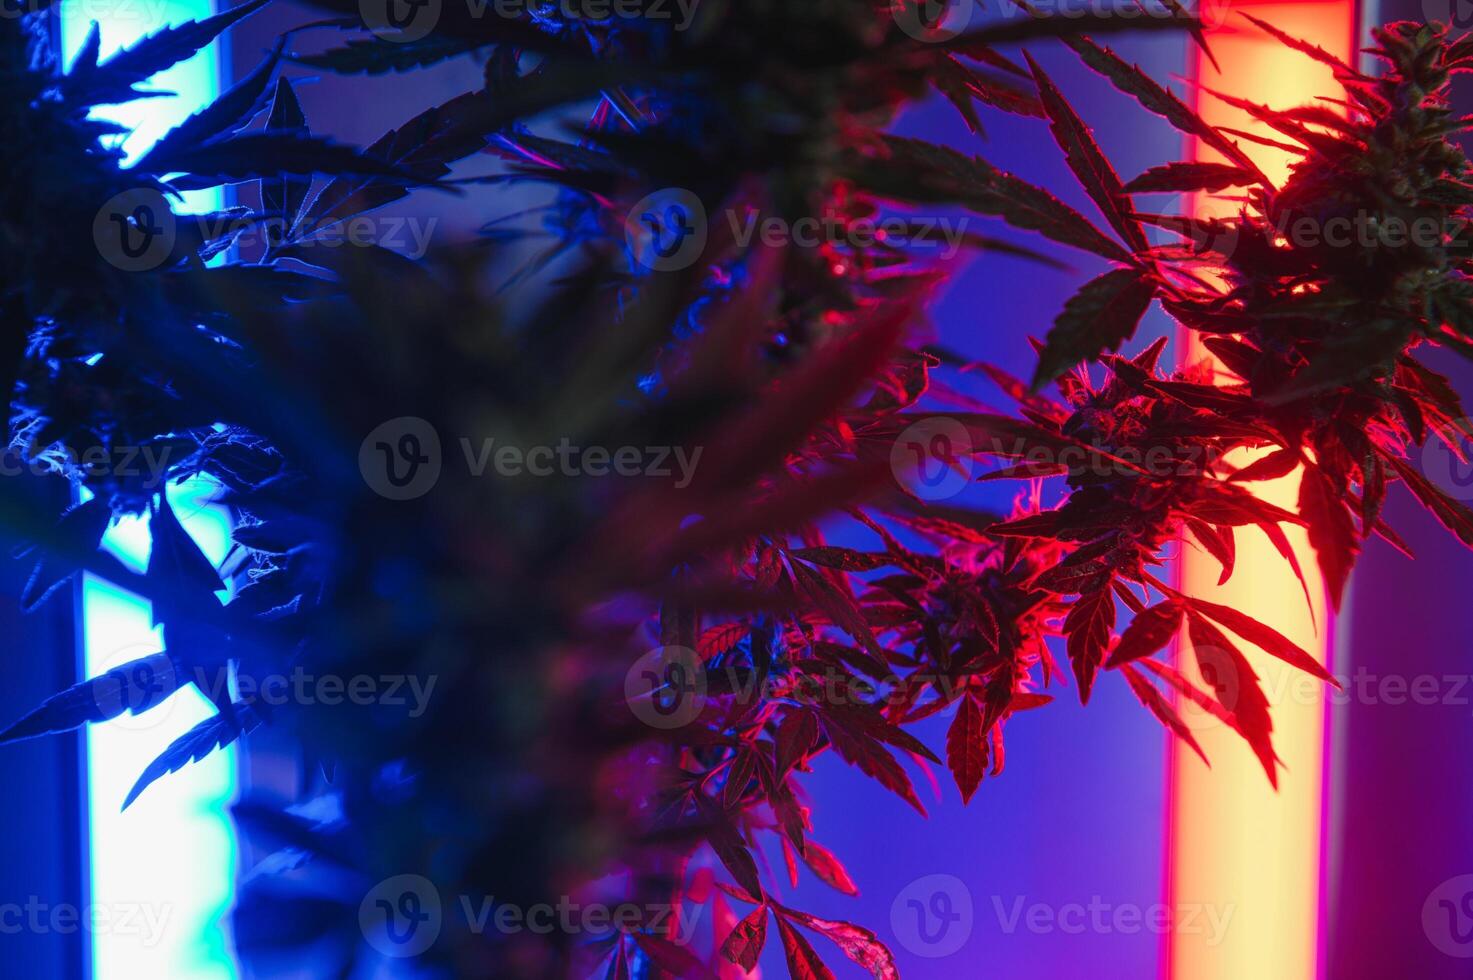 Cannabis Marihuana Pflanze im Dampfwelle tief lila Neon- Stil. medizinisch Pflanze von Cannabis oder Hanf mit blühen Knospen und ultraviolett Licht. Blühen vegetativ Busch mit Kristall Trichome foto